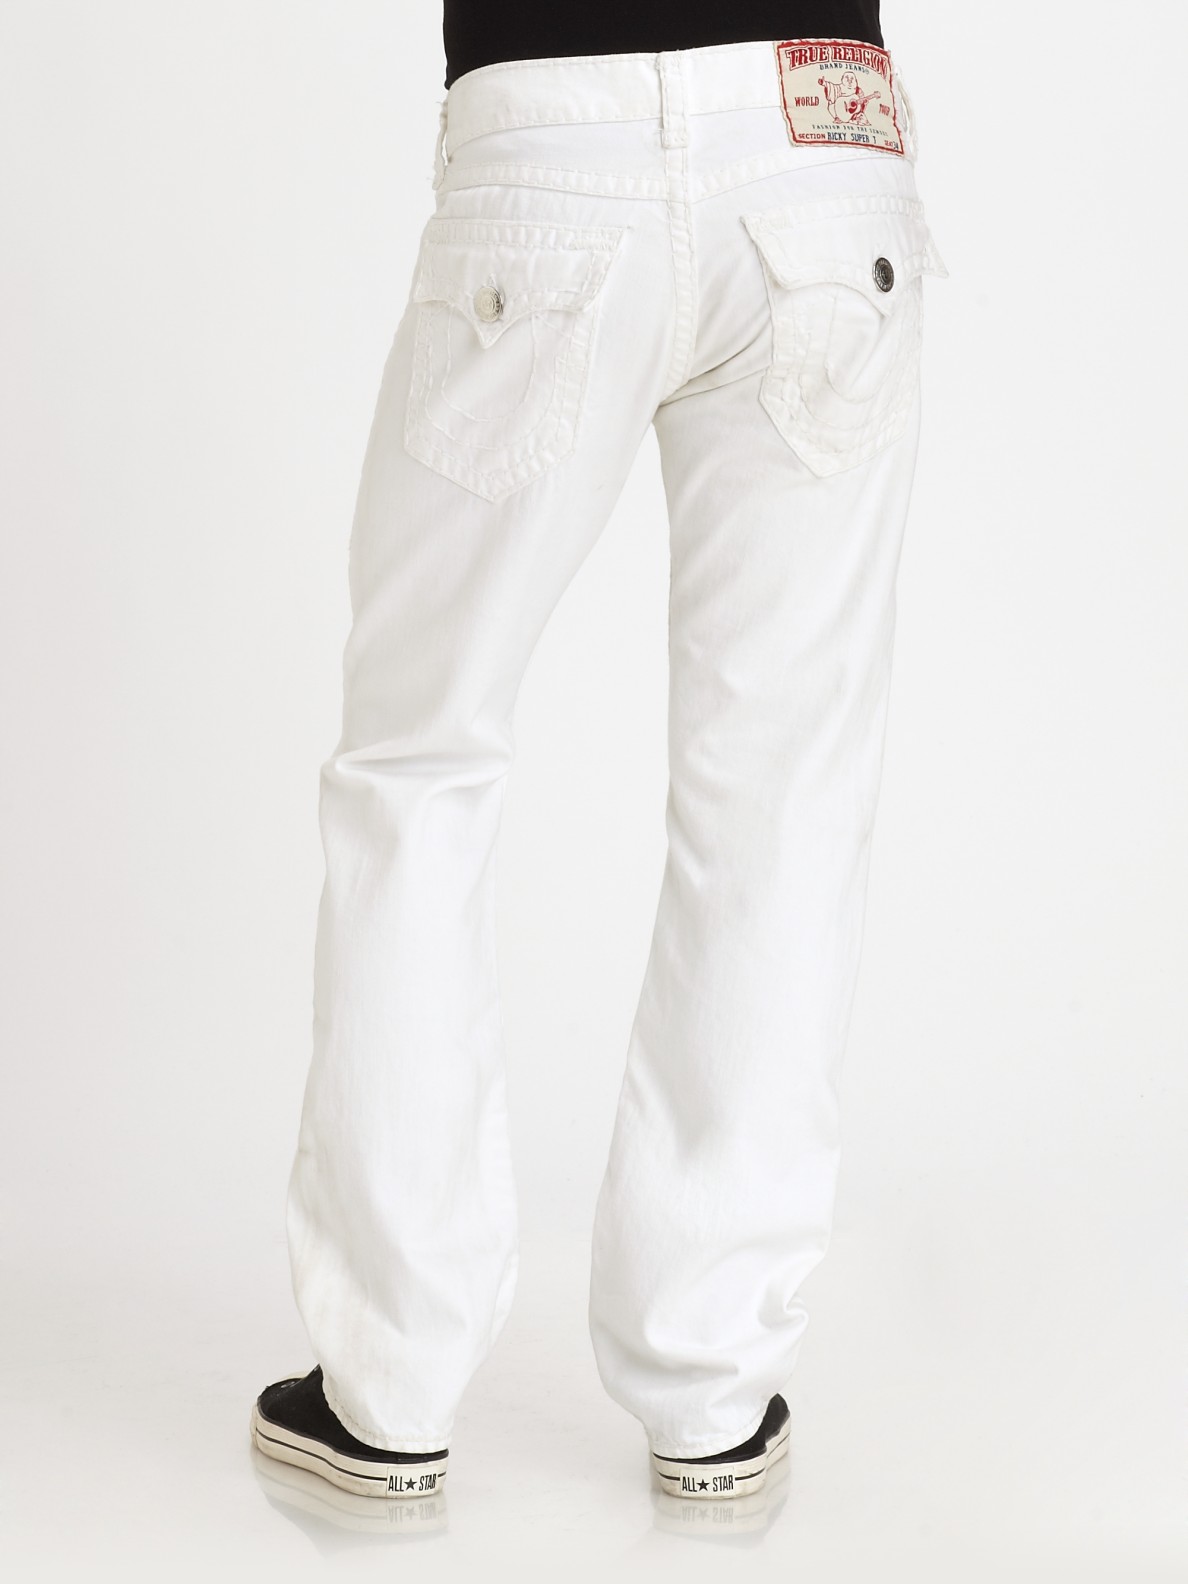 Lyst - True Religion Ricky Straight leg Jeans in White for Men